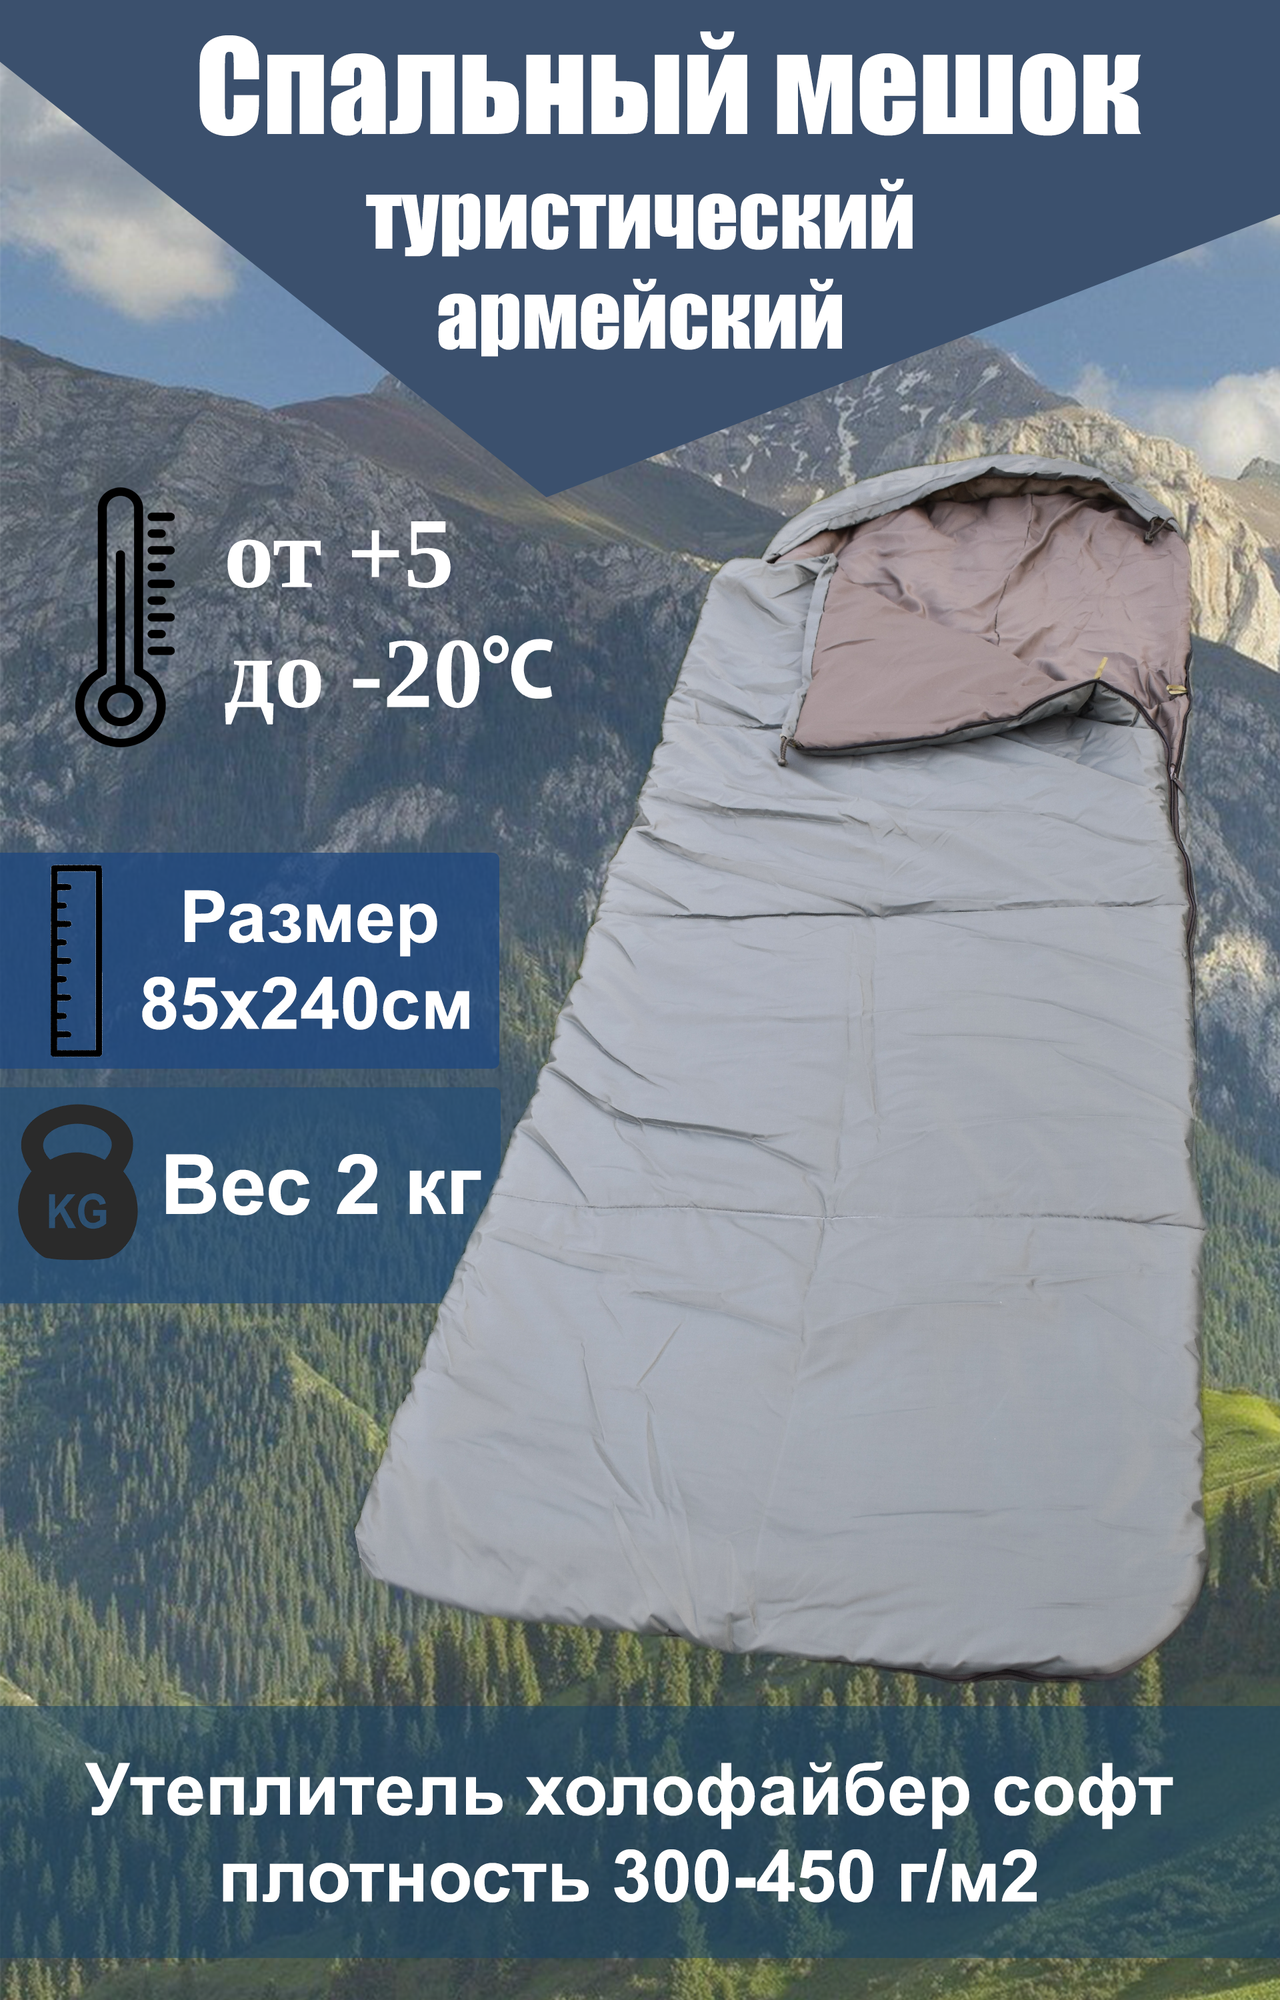 Спальный мешок, армейский туристический спальник, одеяло -20°C, 85х240 см